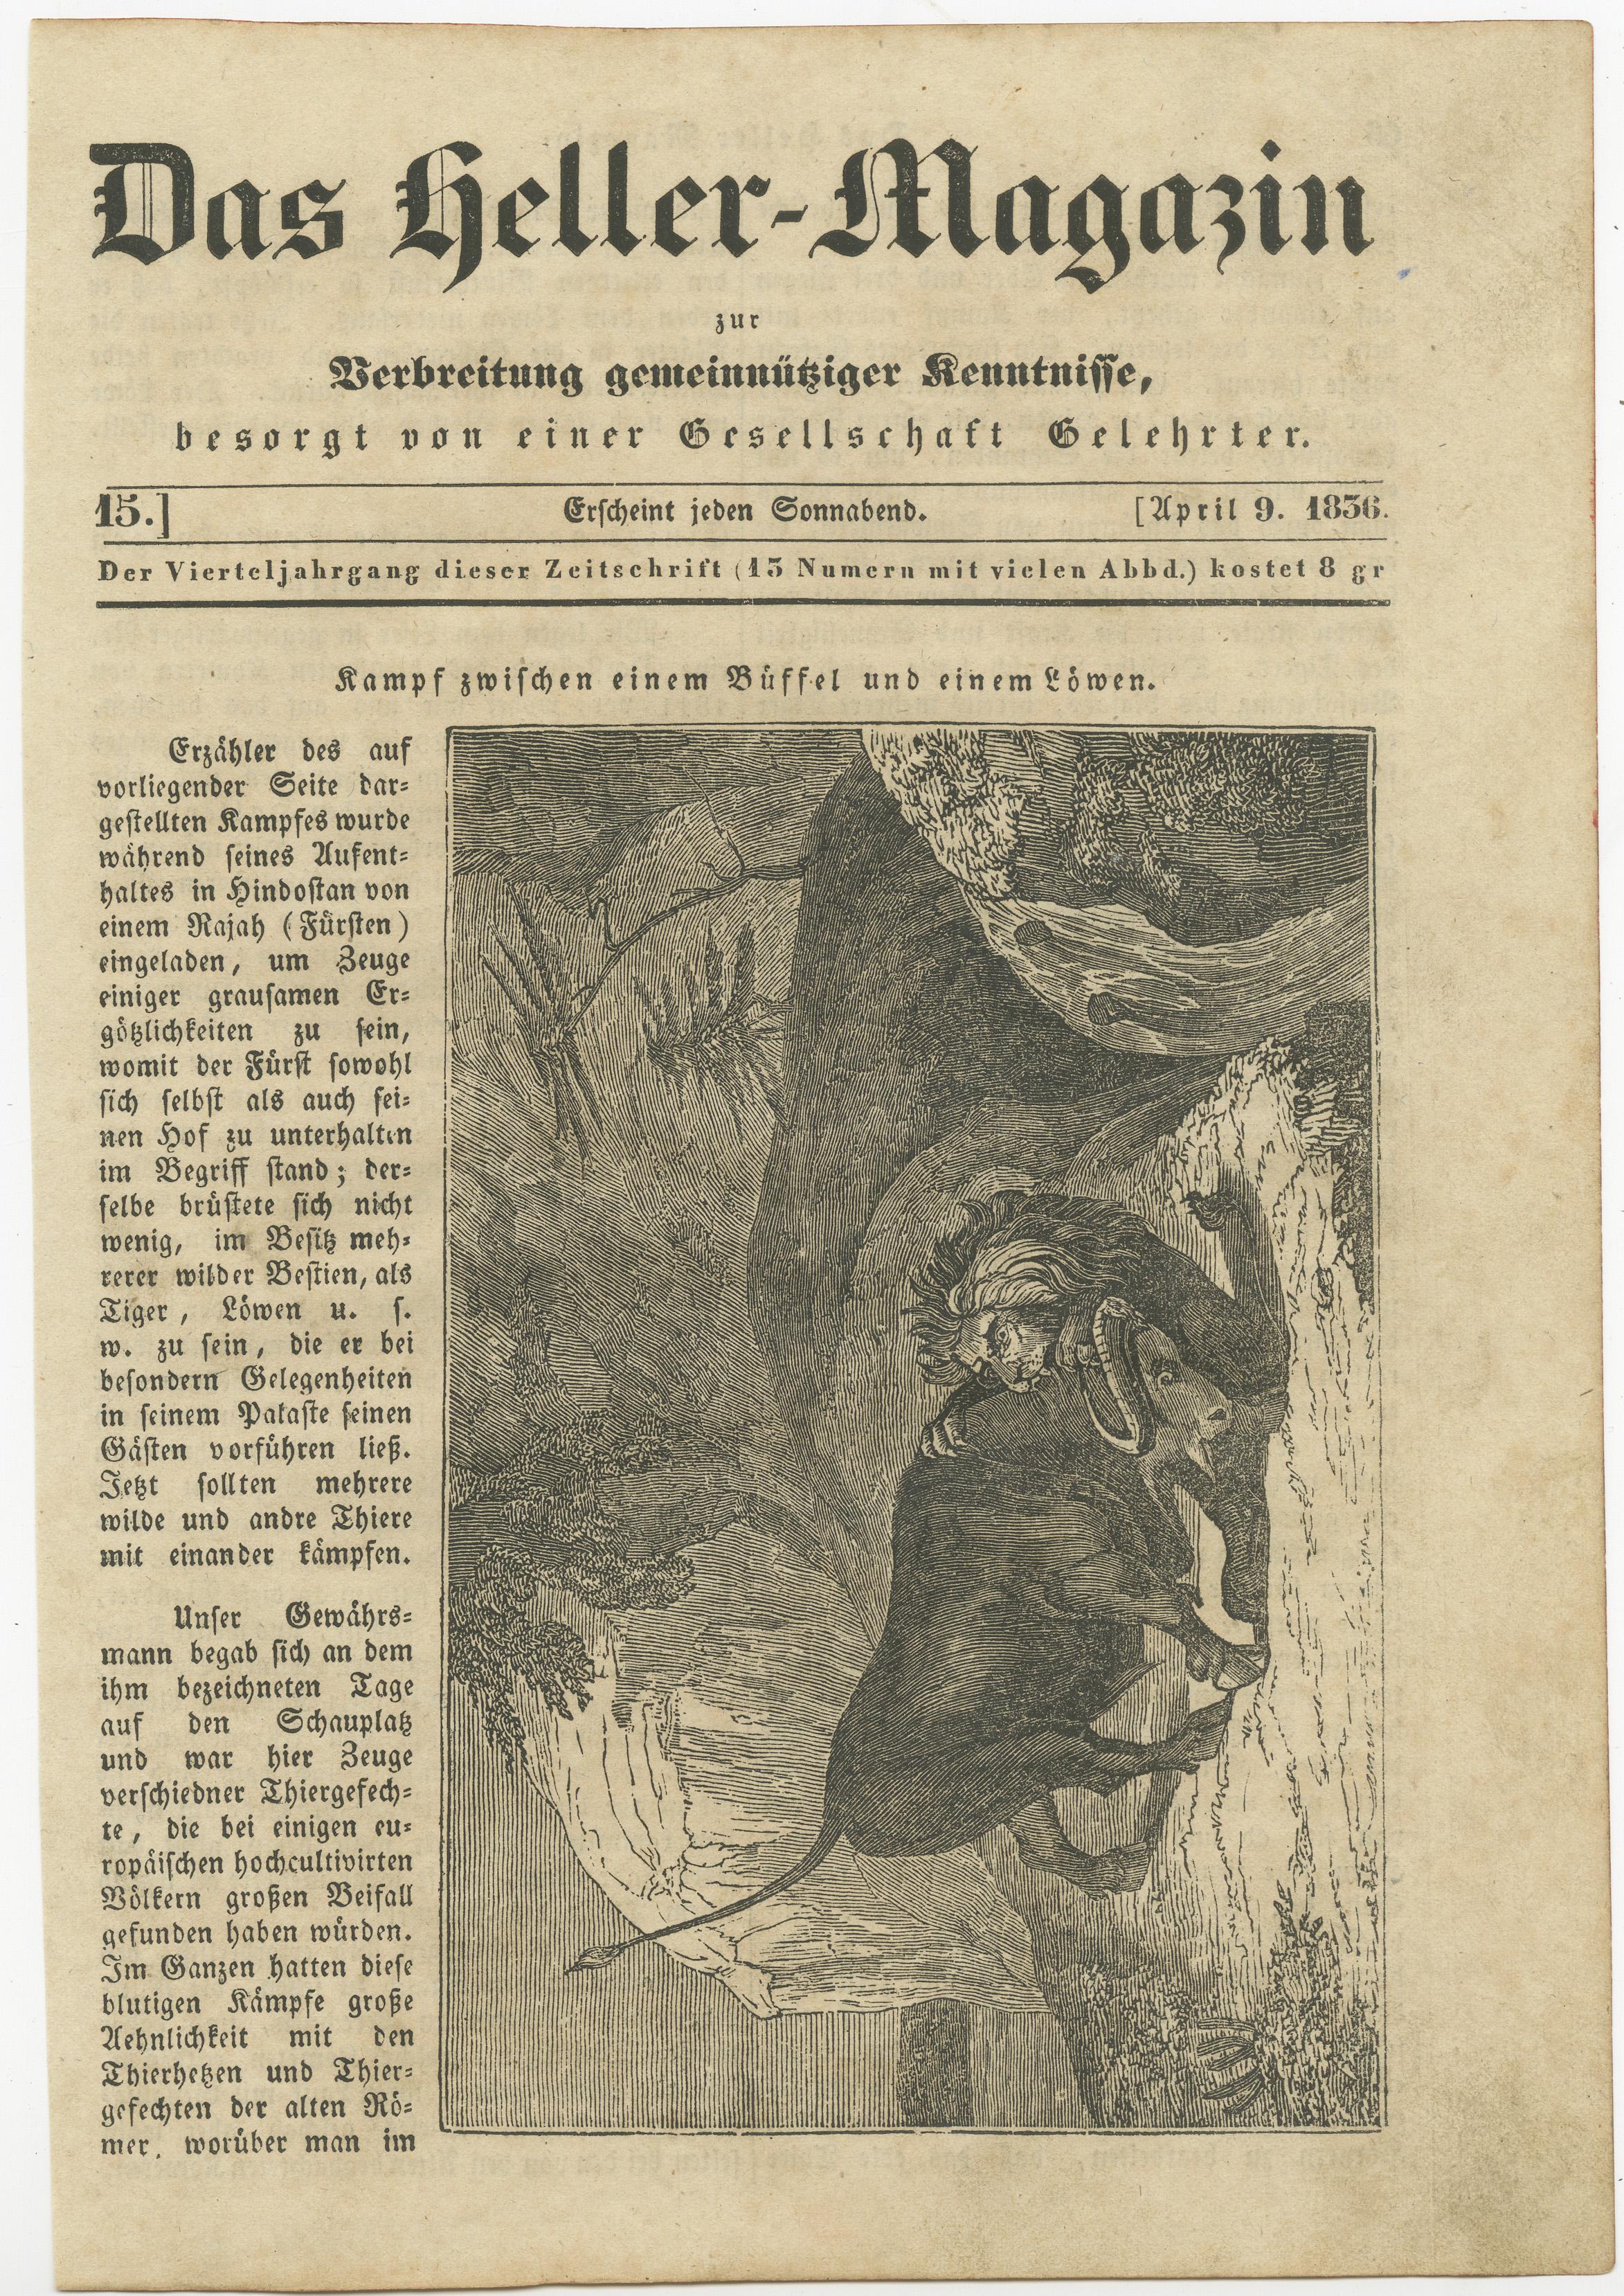 Antique print titled 'Kamp zwischen einem Büffel und einem Löwen'. Old print of a fight between a buffalo and a lion. This print originates from Das heller-Magazin'. Published april 9. 1836.